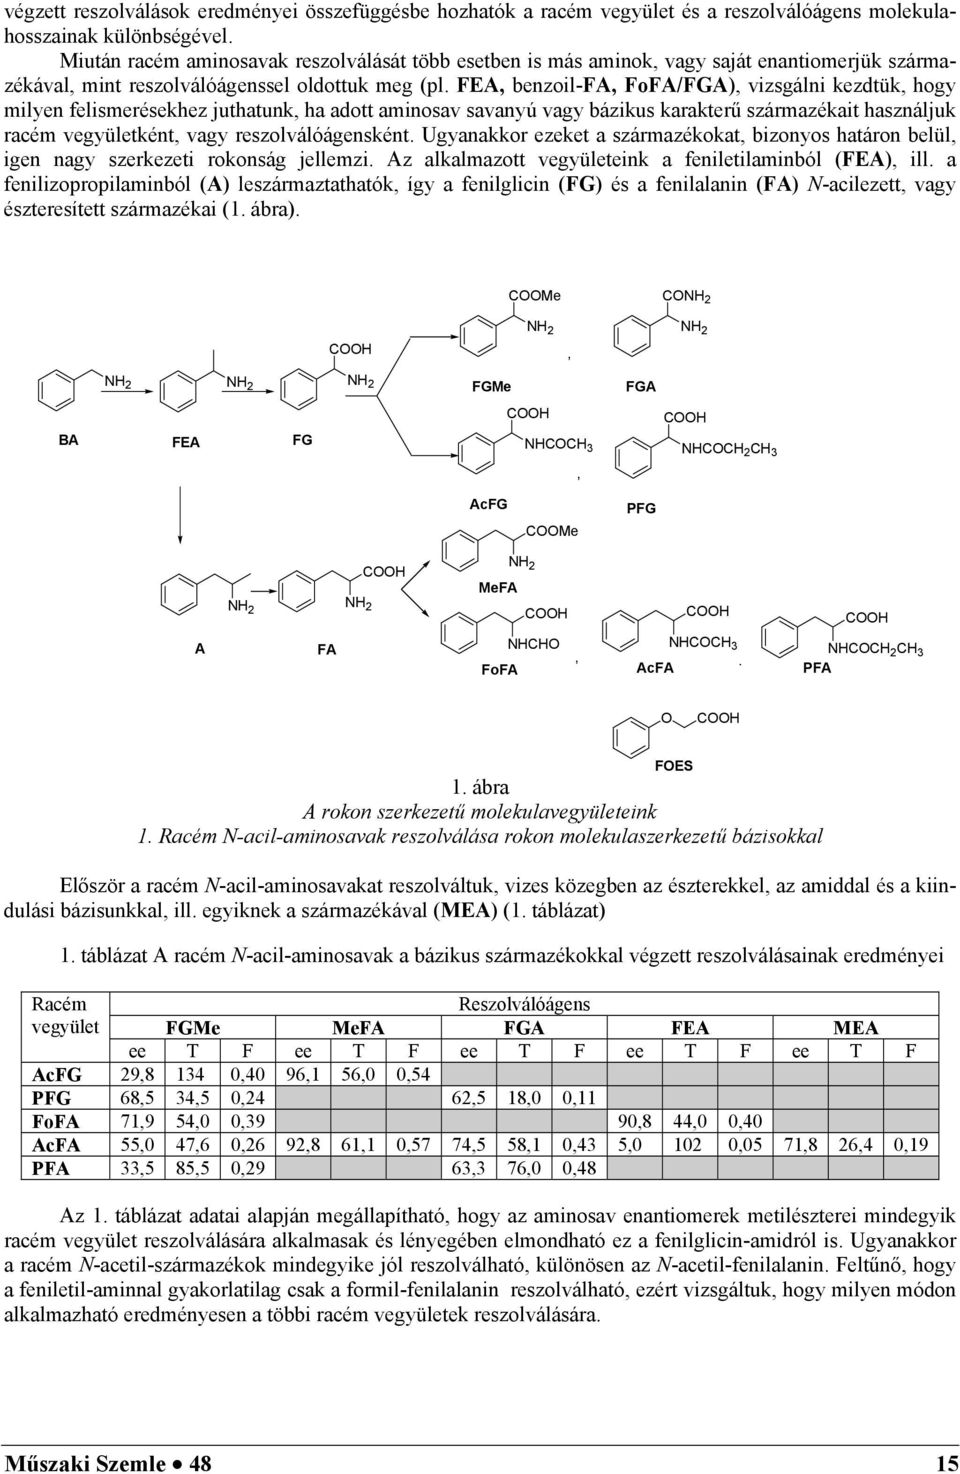 FEA, benzoil-fa, FoFA/FGA), vizsgálni kezdtük, hogy milyen felismerésekhez juthatunk, ha adott aminosav savanyú vagy bázikus karakterű származékait használjuk racém vegyületként, vagy